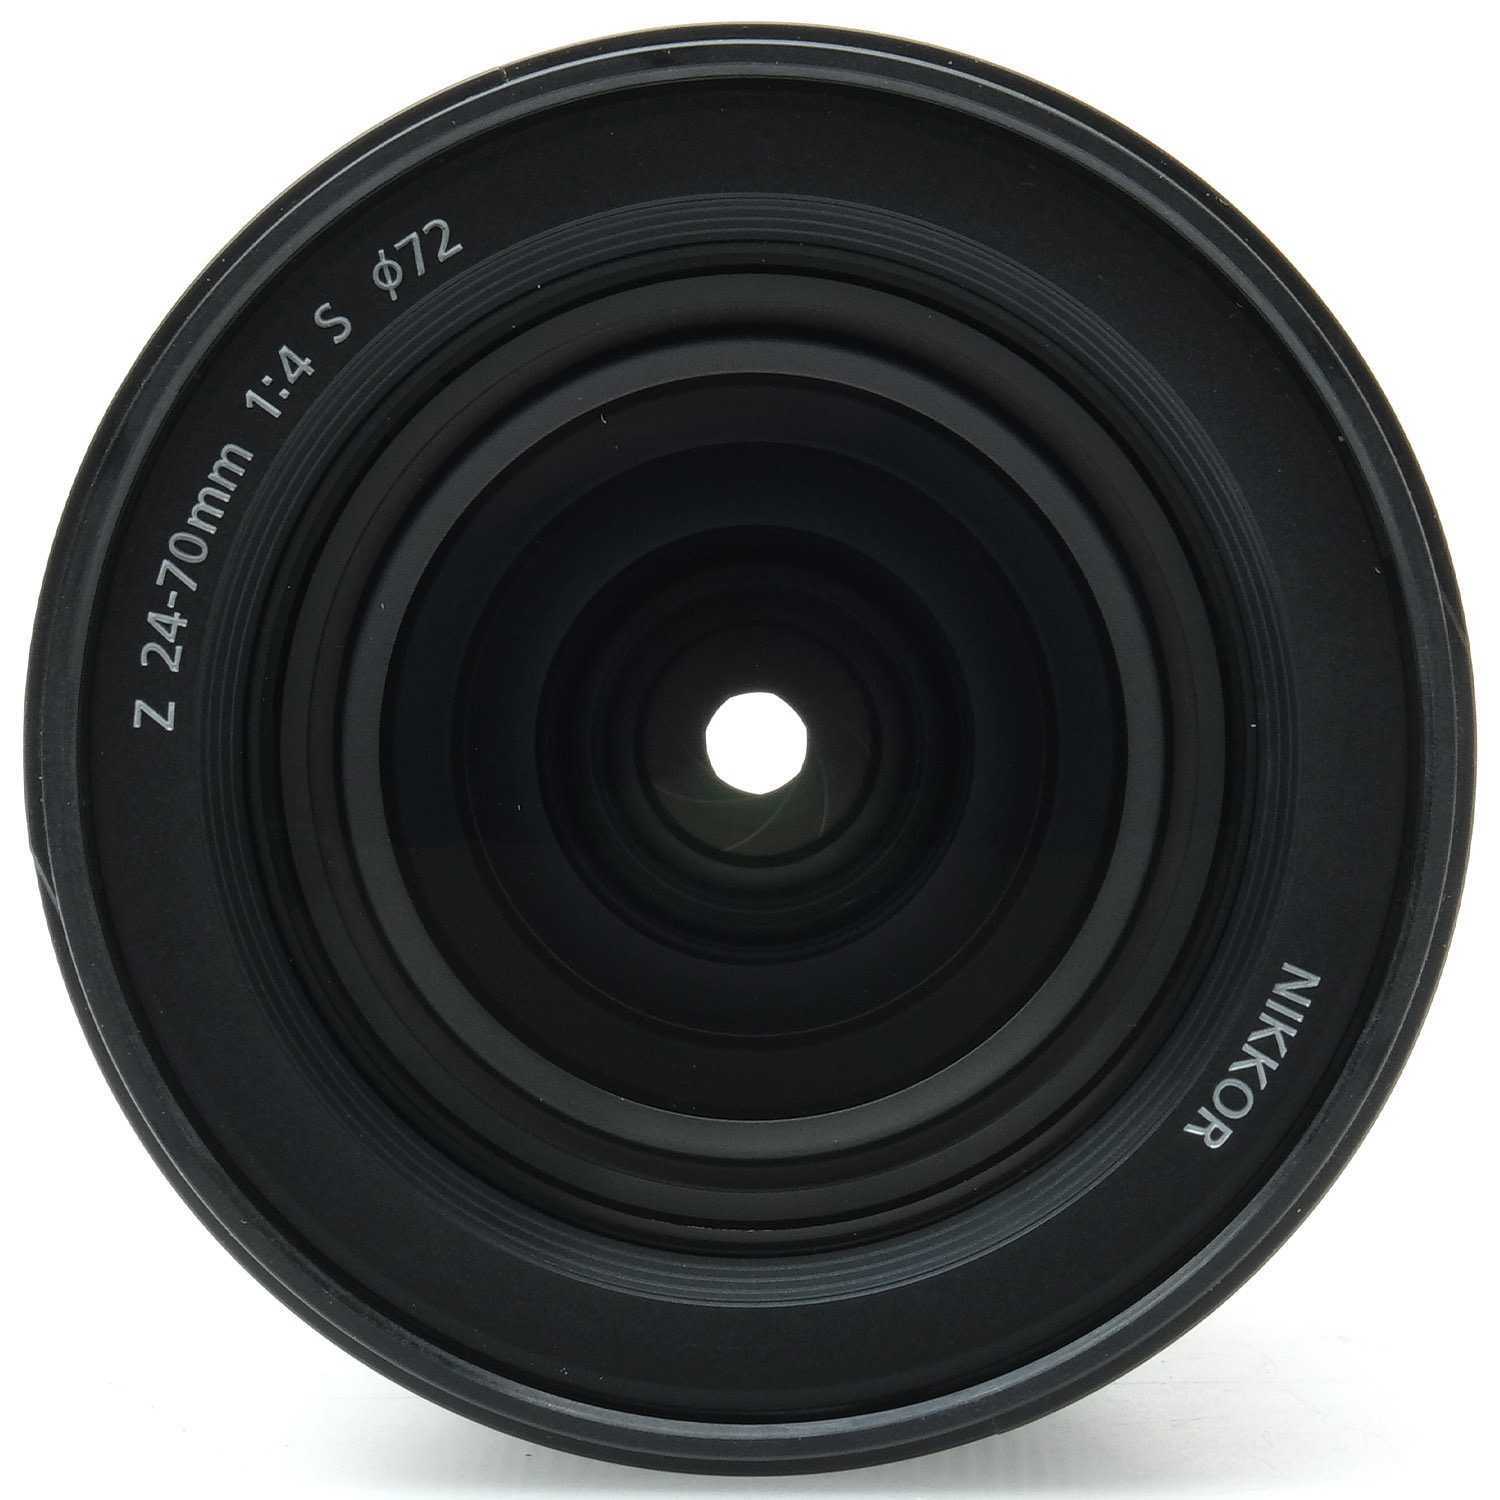 Nikon Z 24-70mm f4 S 20190543